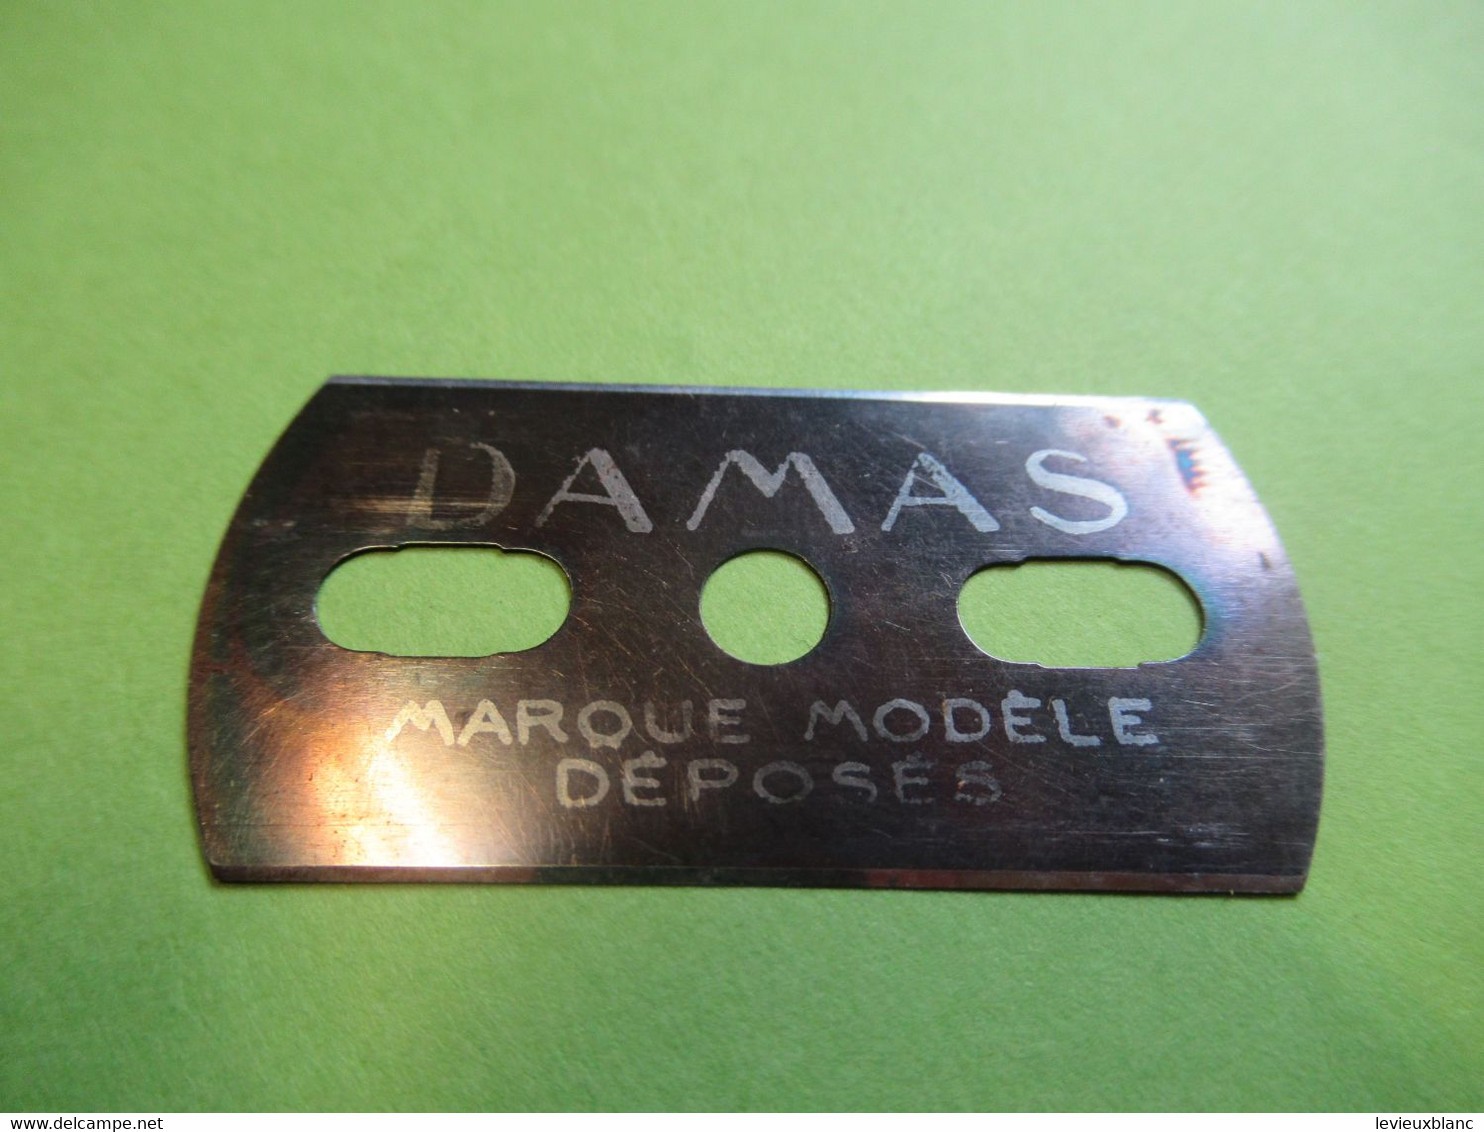 1 Lame De Rasoir Usagée ,sans Emballage Et Sans étui/DAMAS Bleue/Marque Modèle Déposés/Vers 1920-1950           PARF216 - Razor Blades